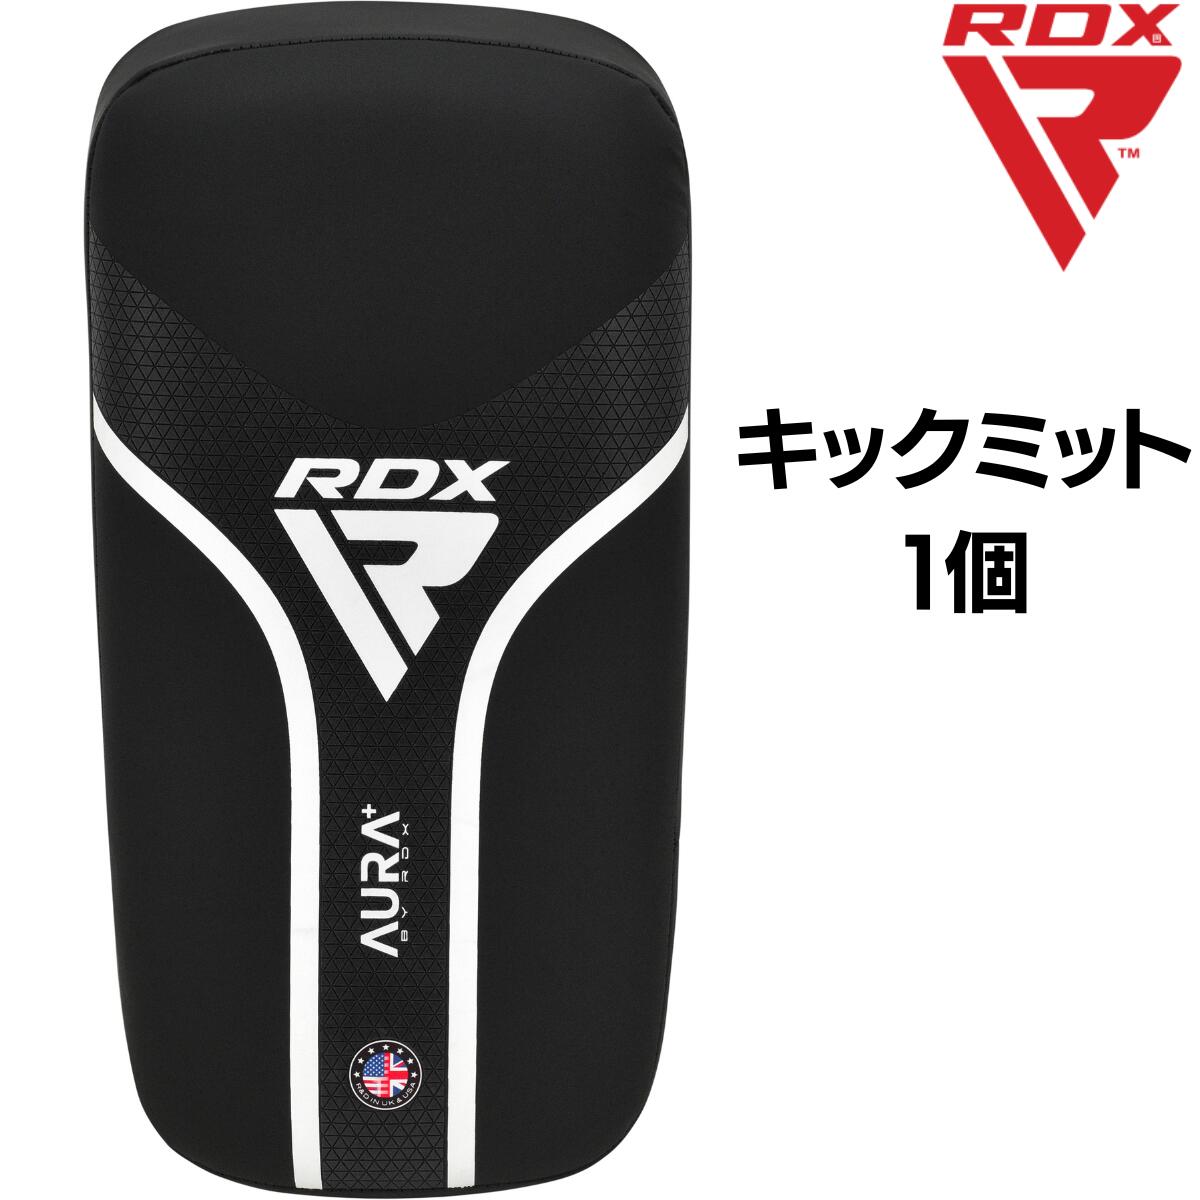 RDX キックミット 1個 AURA シリーズ キックボクシング 空手 ムエタイ 格闘技 MMA ボクシング ジム トレーニング 耐久性 男性 女性 メンズ レディース 大人 子供 こども キッズ ジュニア ブラック T17 あす楽 送料無料